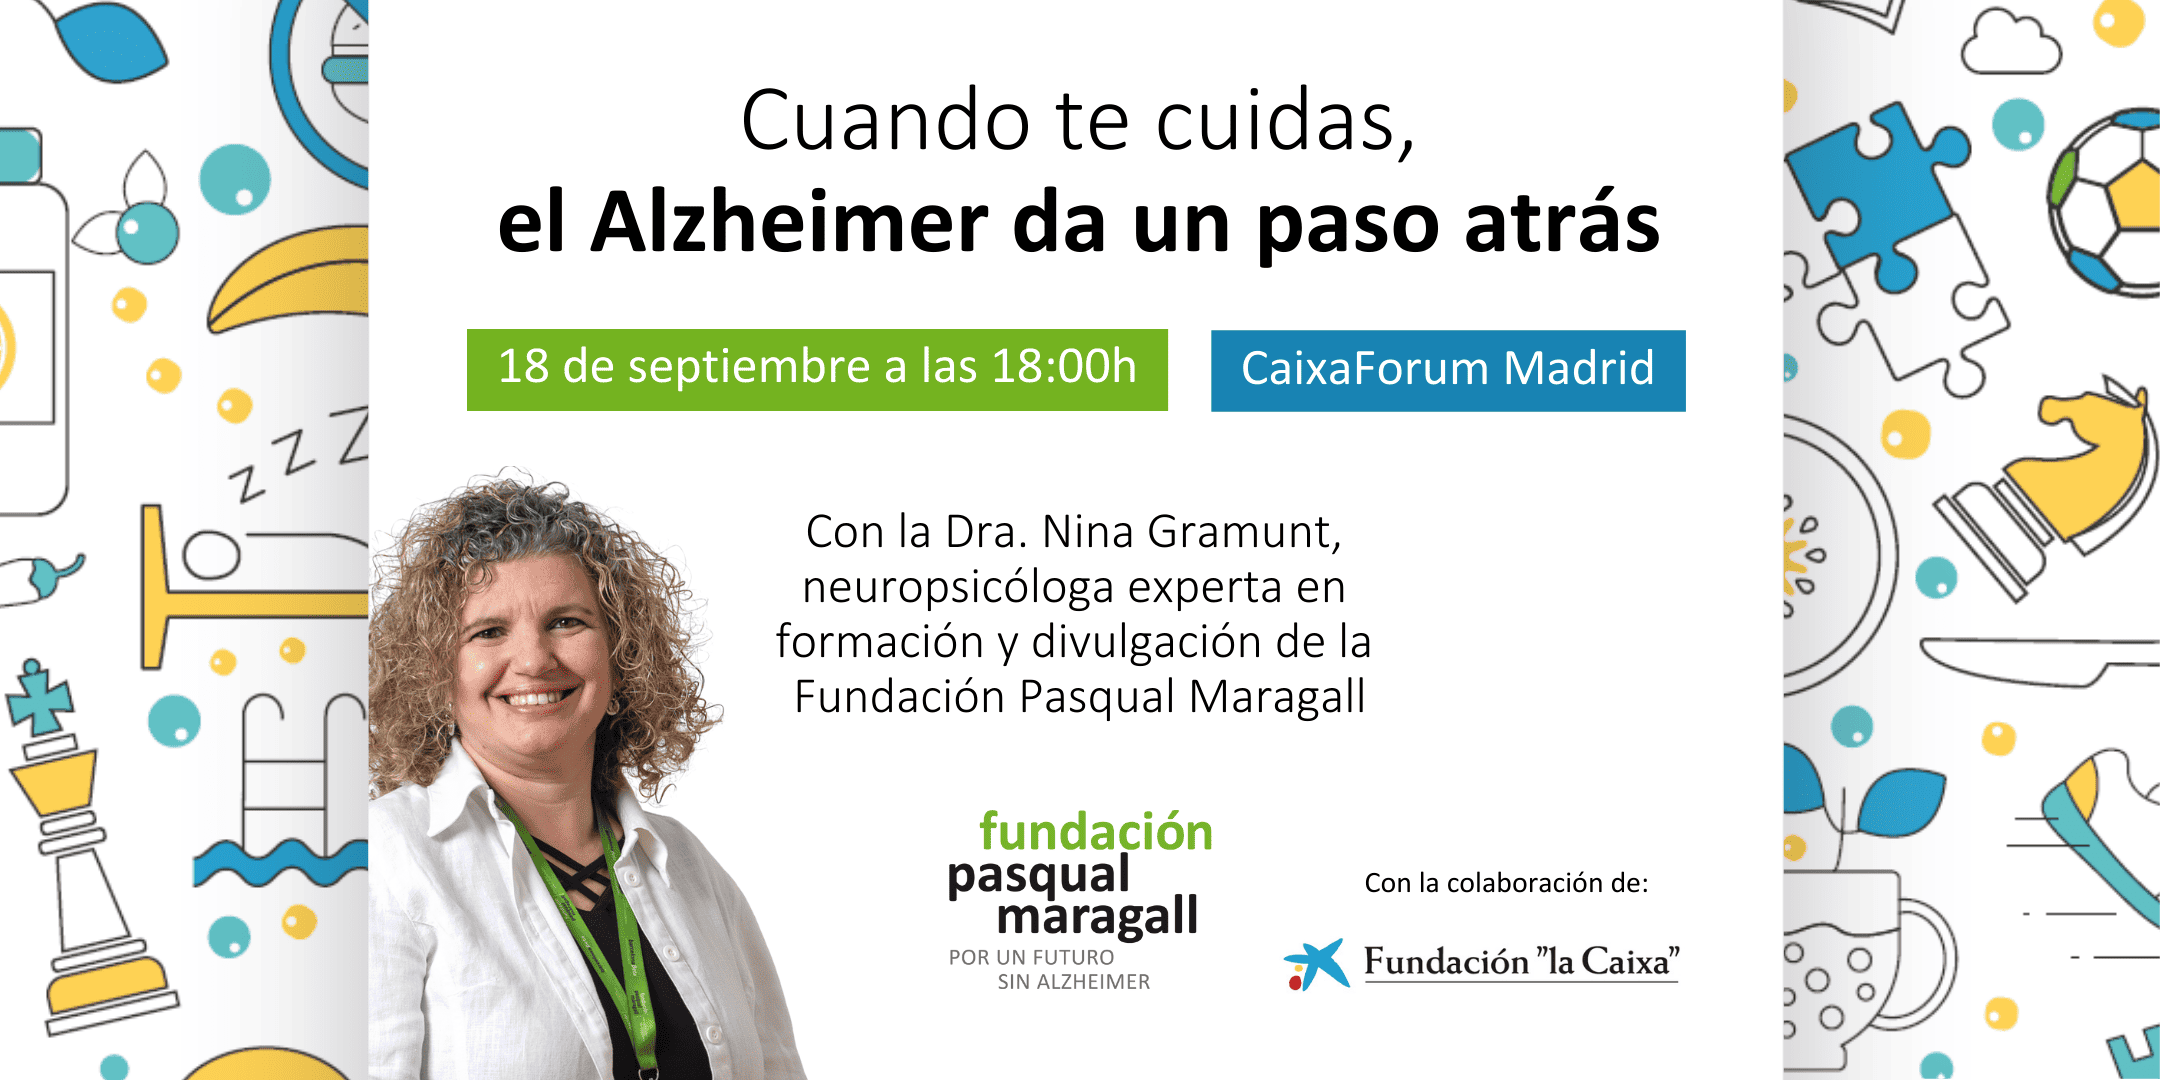 Conferencia «Cuando te cuidas el Alzheimer da un paso atrás» en Madrid